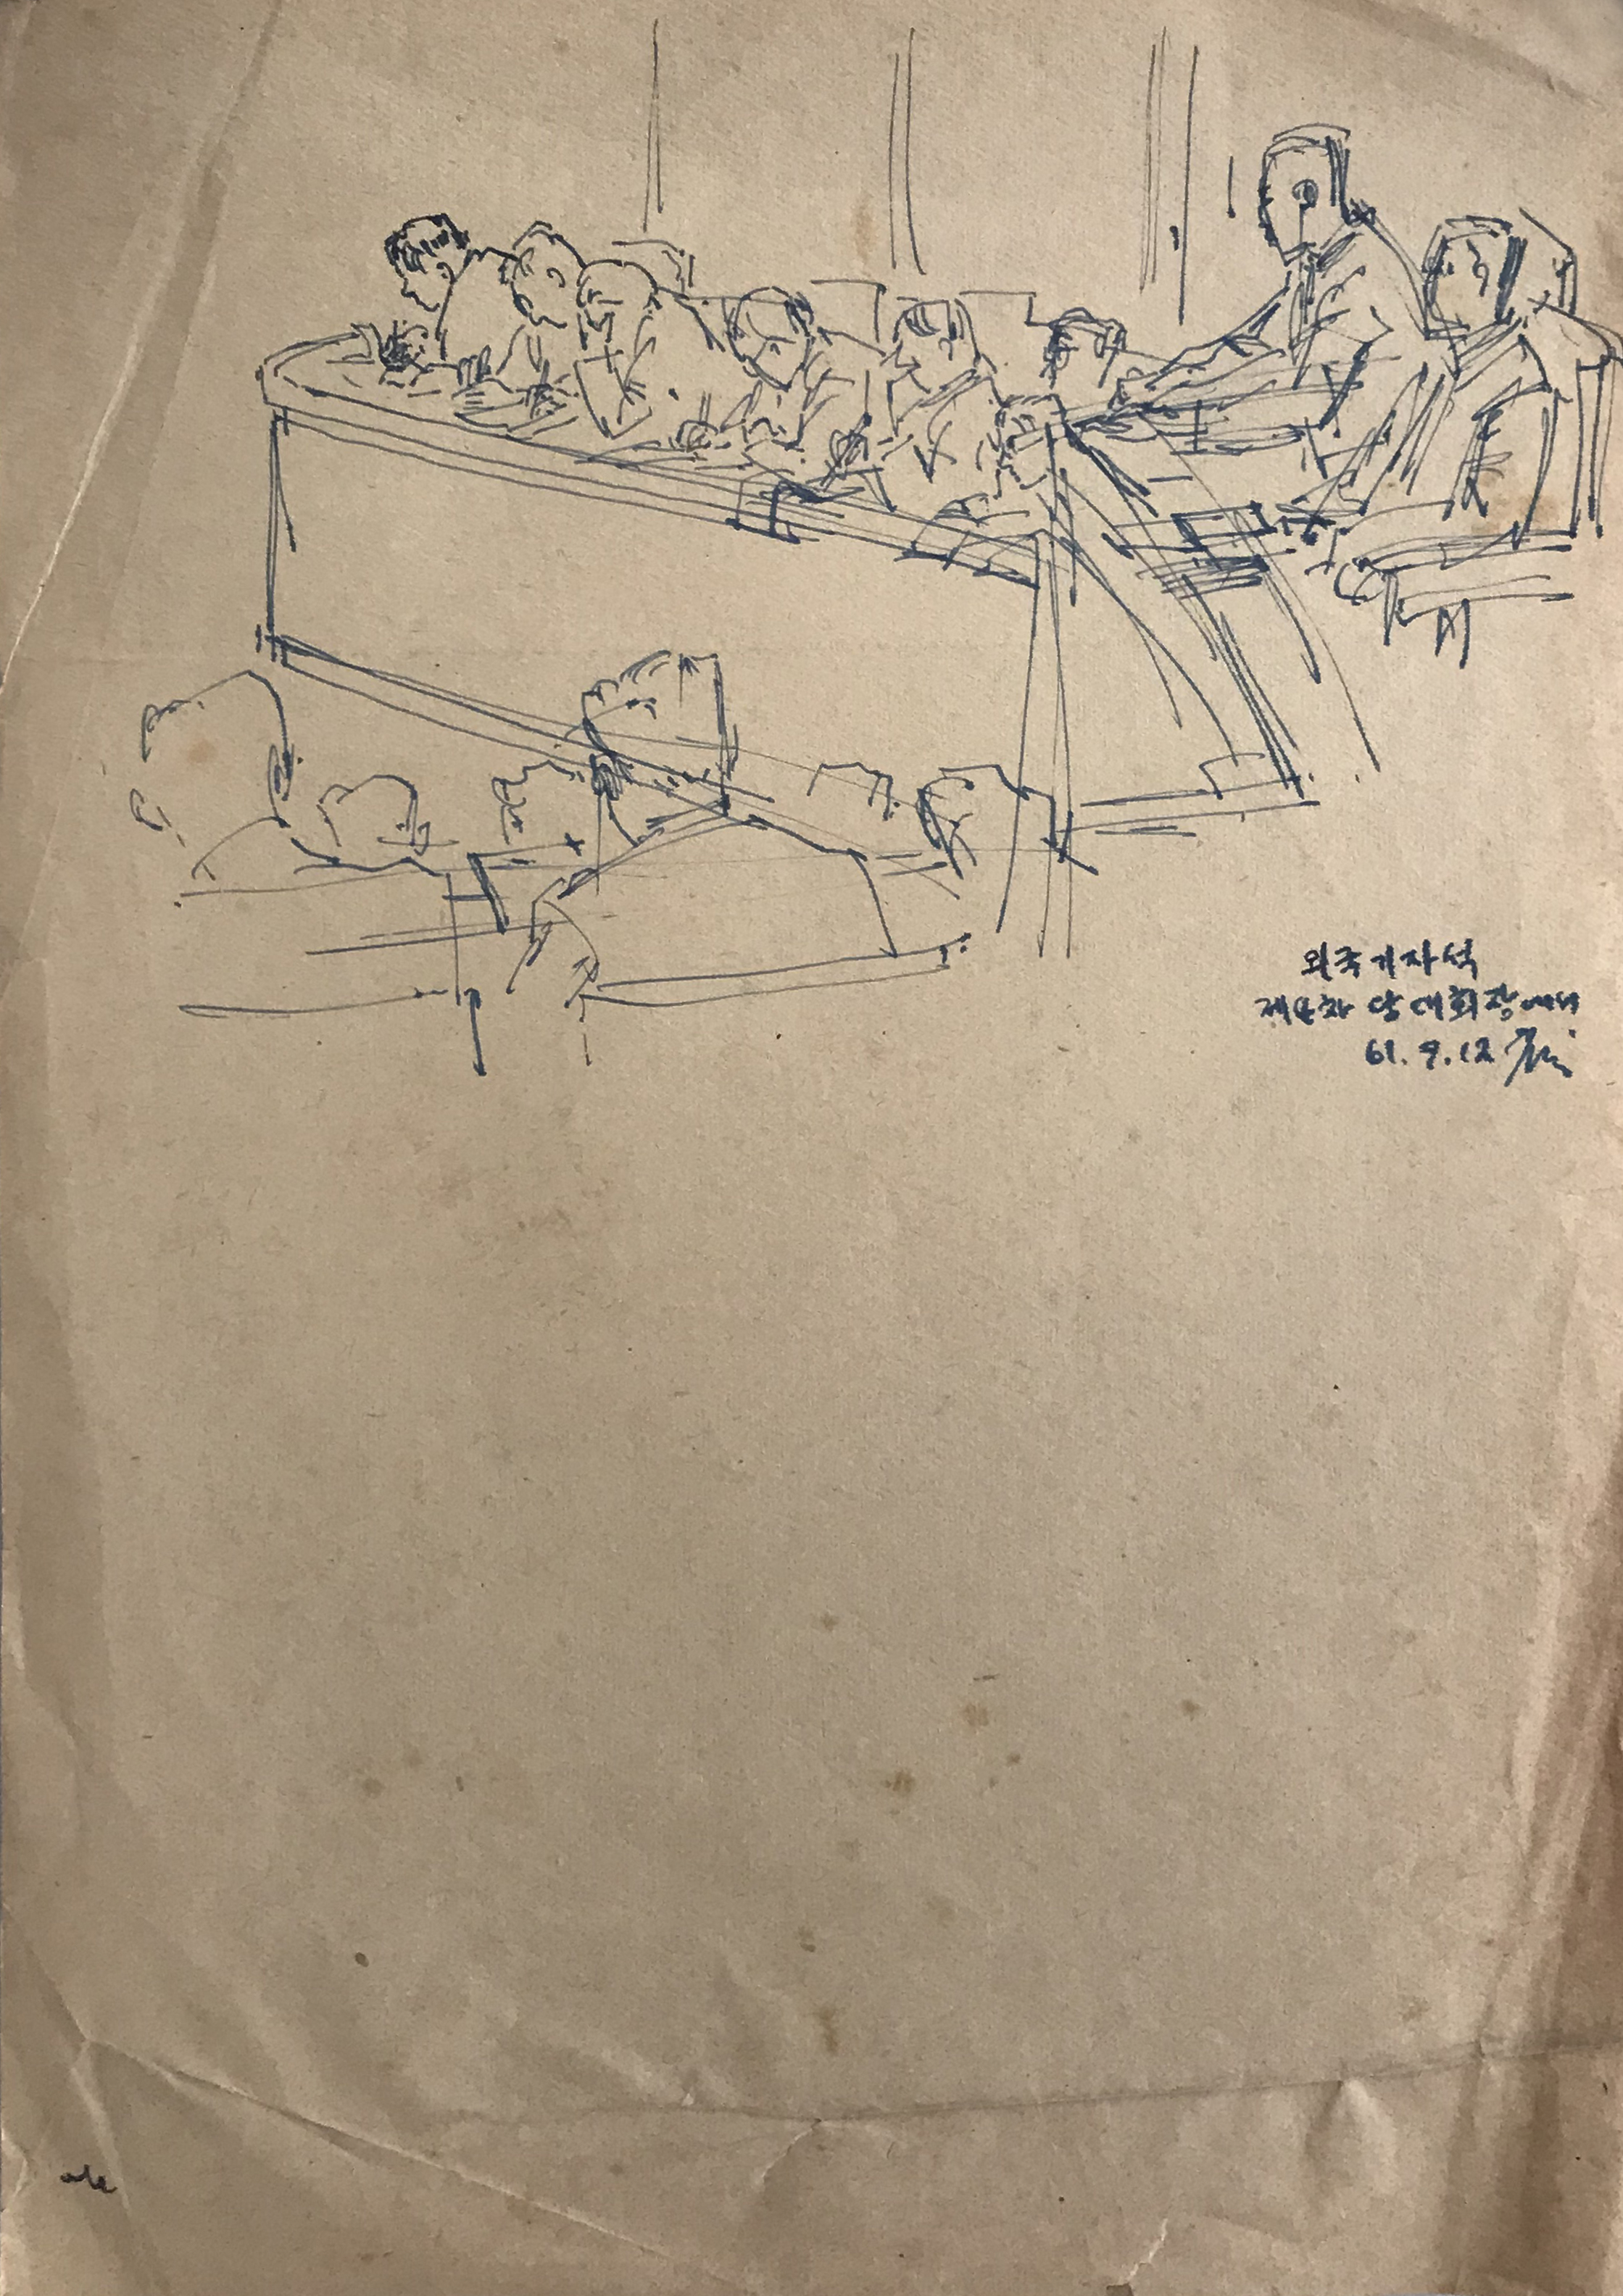 【朝鲜铅笔画】郑温女 1961年9月12日 20.5 x 29cm